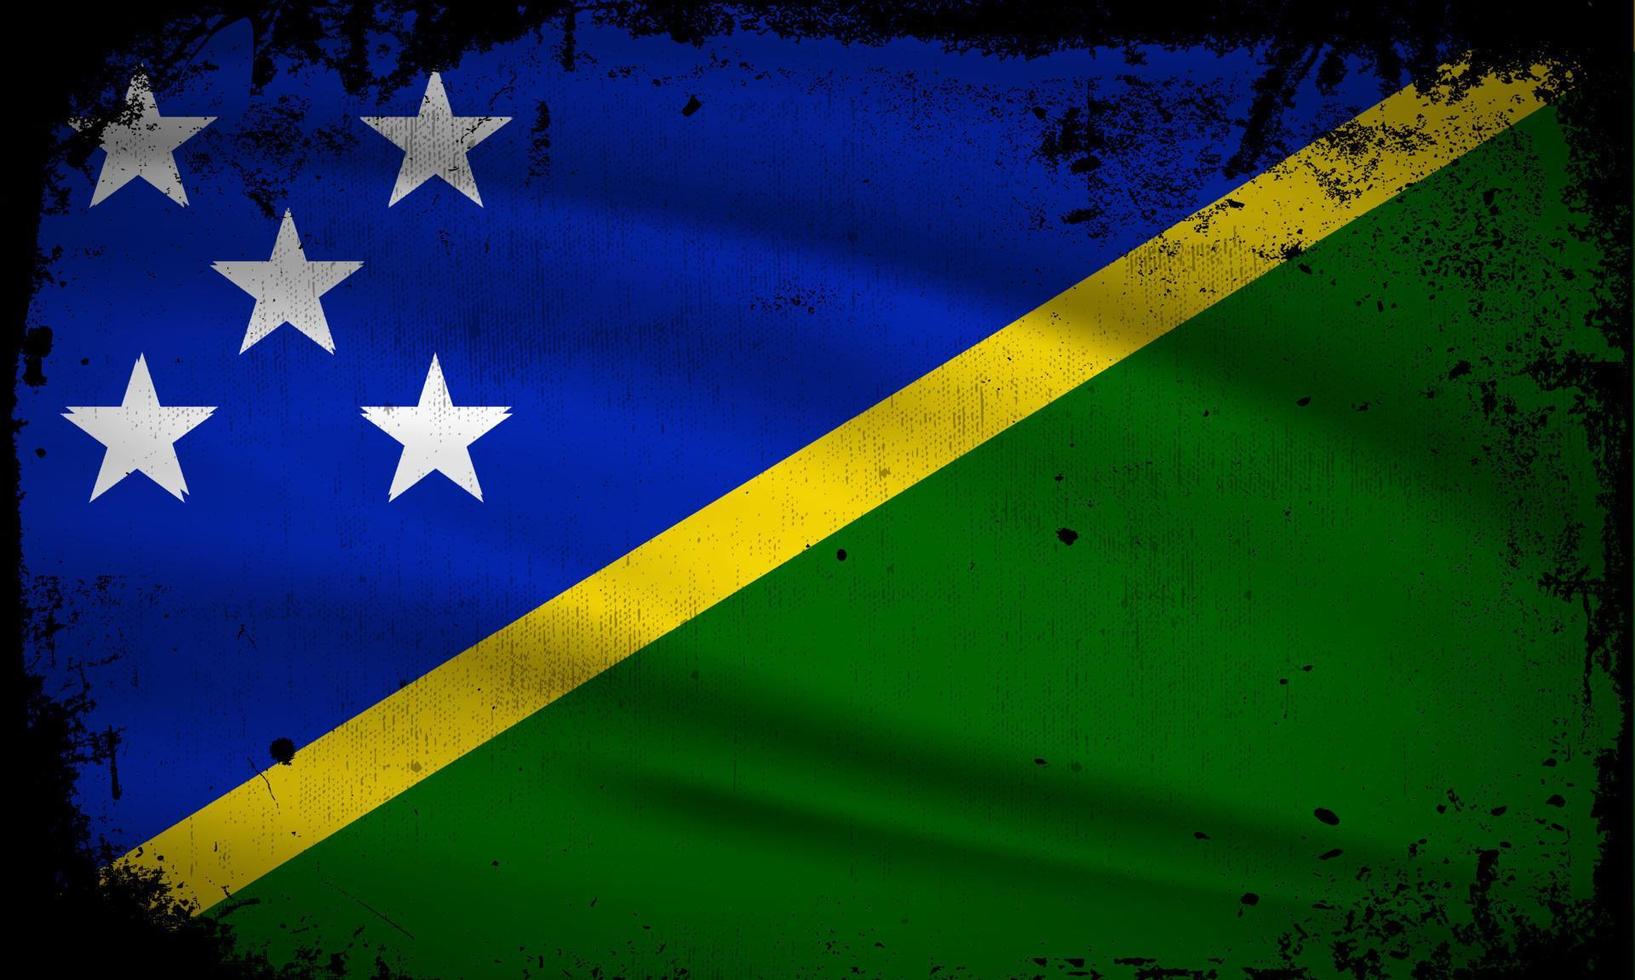 nouveau vecteur abstrait de fond de drapeau des îles salomon avec style de trait grunge. illustration vectorielle du jour de l'indépendance des îles salomon.